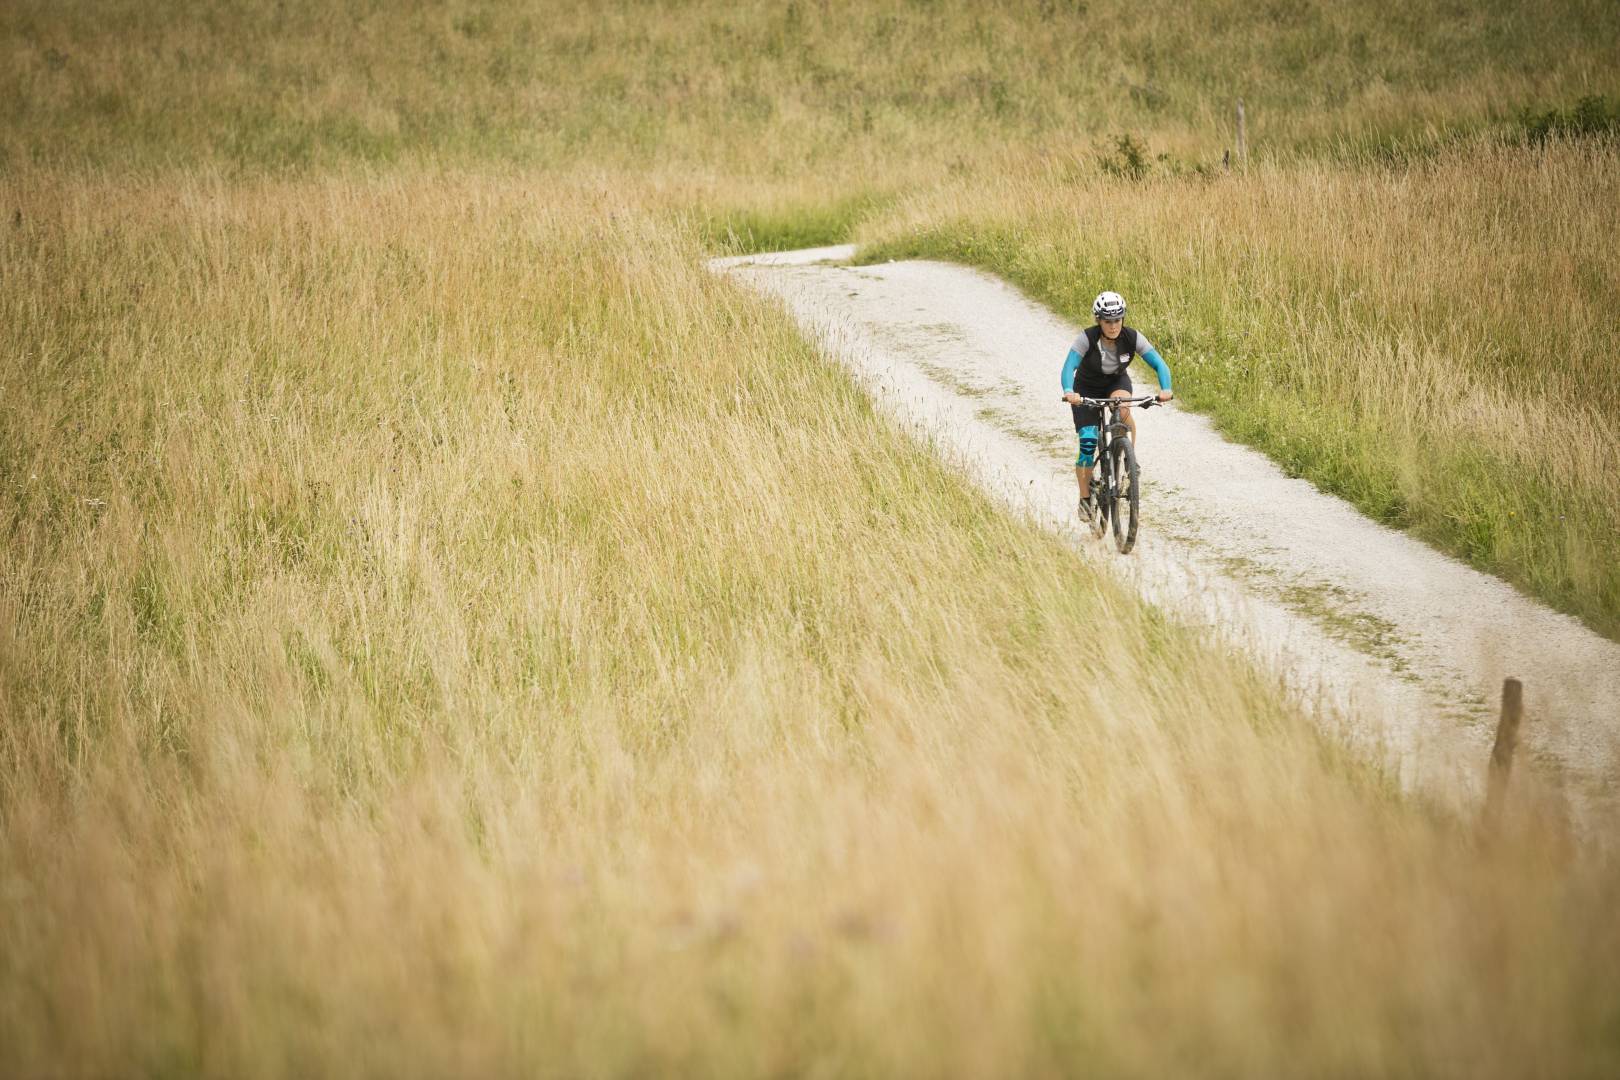 Vrouw met armsleeves en kniebrace op de achtergrond van het beeld loopt op een mountainbike over een pad tussen hoog gras